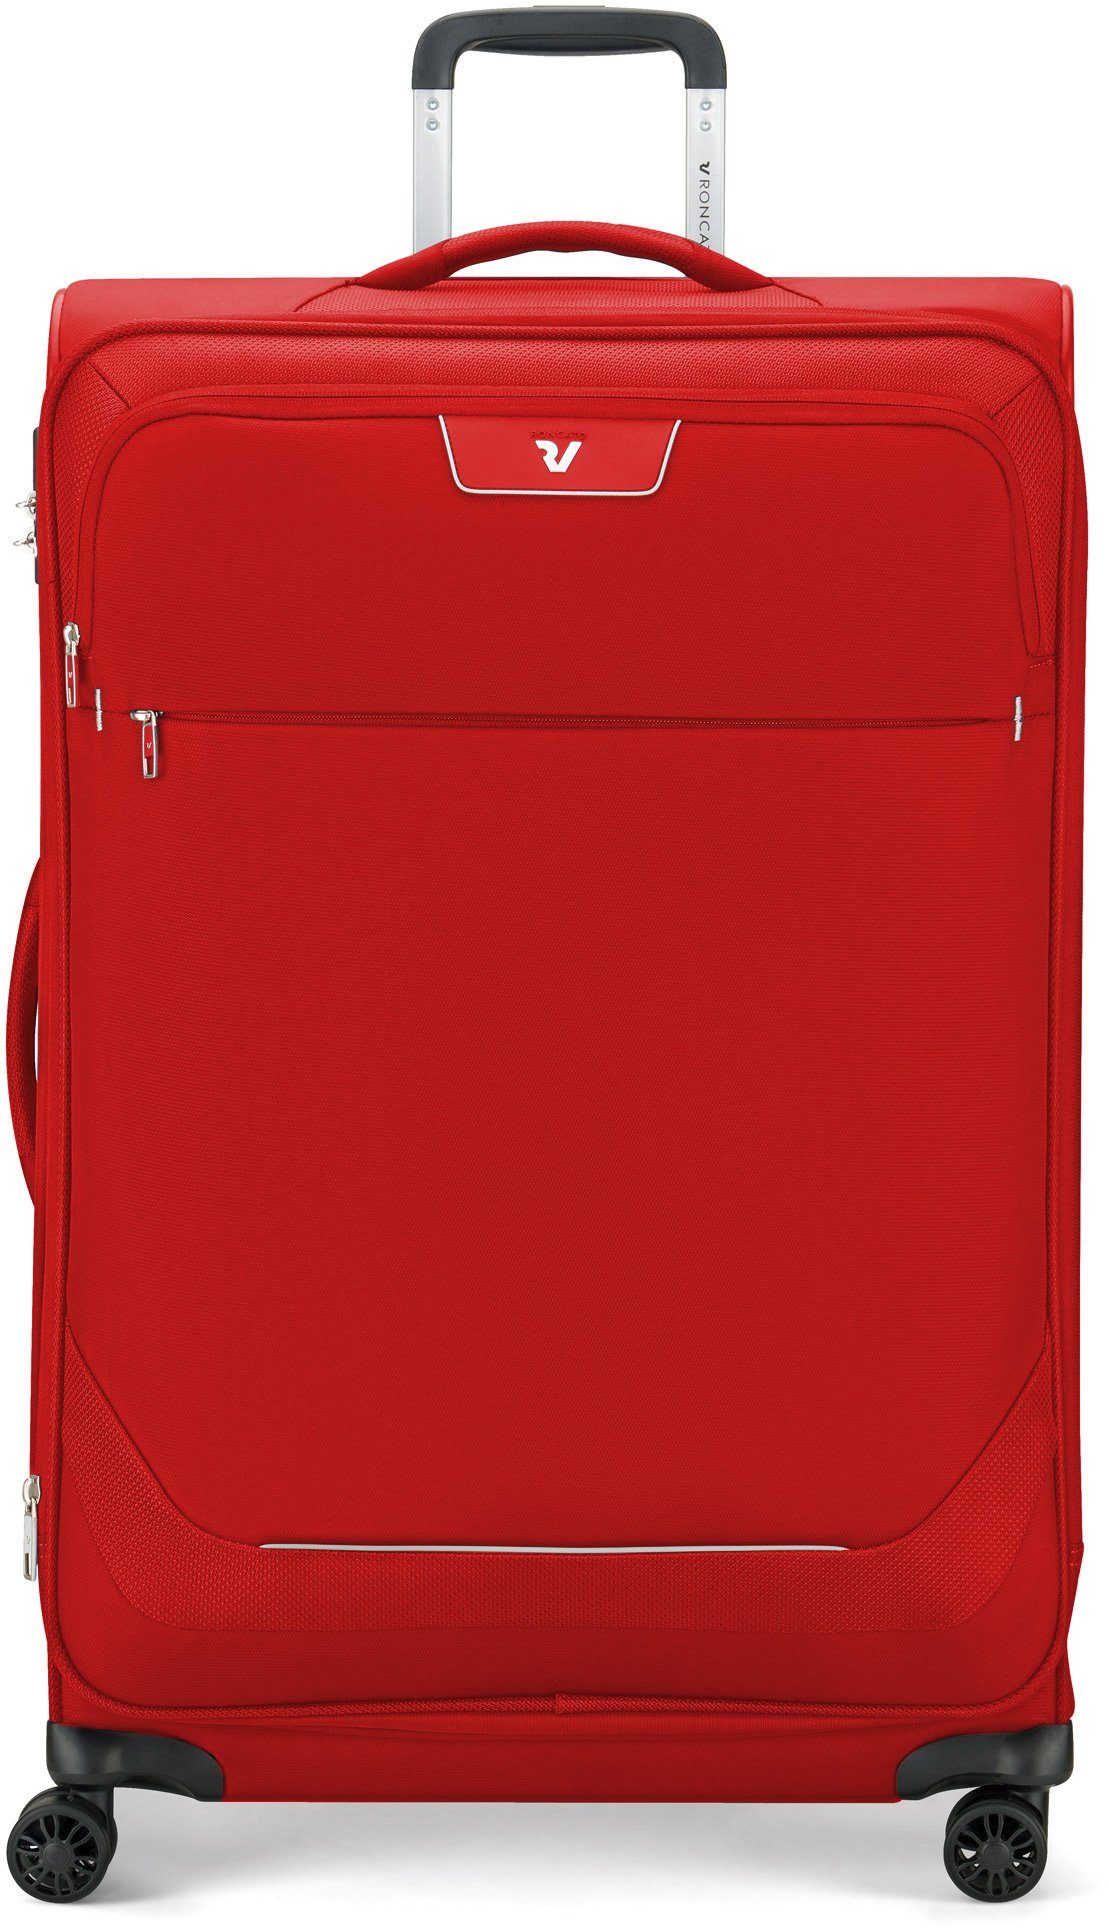 RONCATO Weichgepäck-Trolley Joy, 75 cm, 4 Rollen, Reisegepäck Koffer mittel groß mit Volumenerweiterung und TSA Schloss